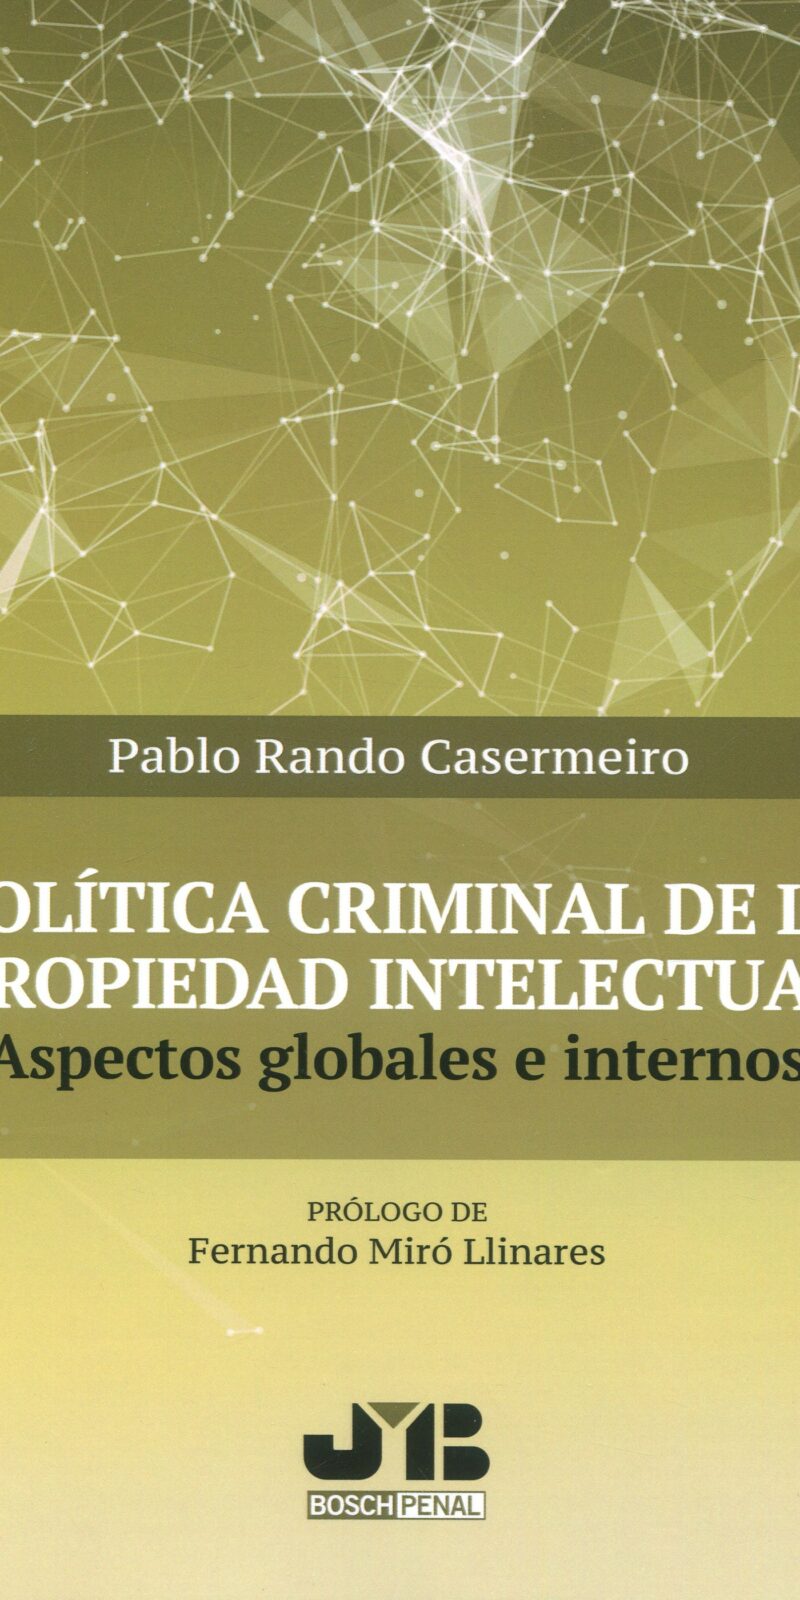 Política criminal propiedad intelectual9788412367188